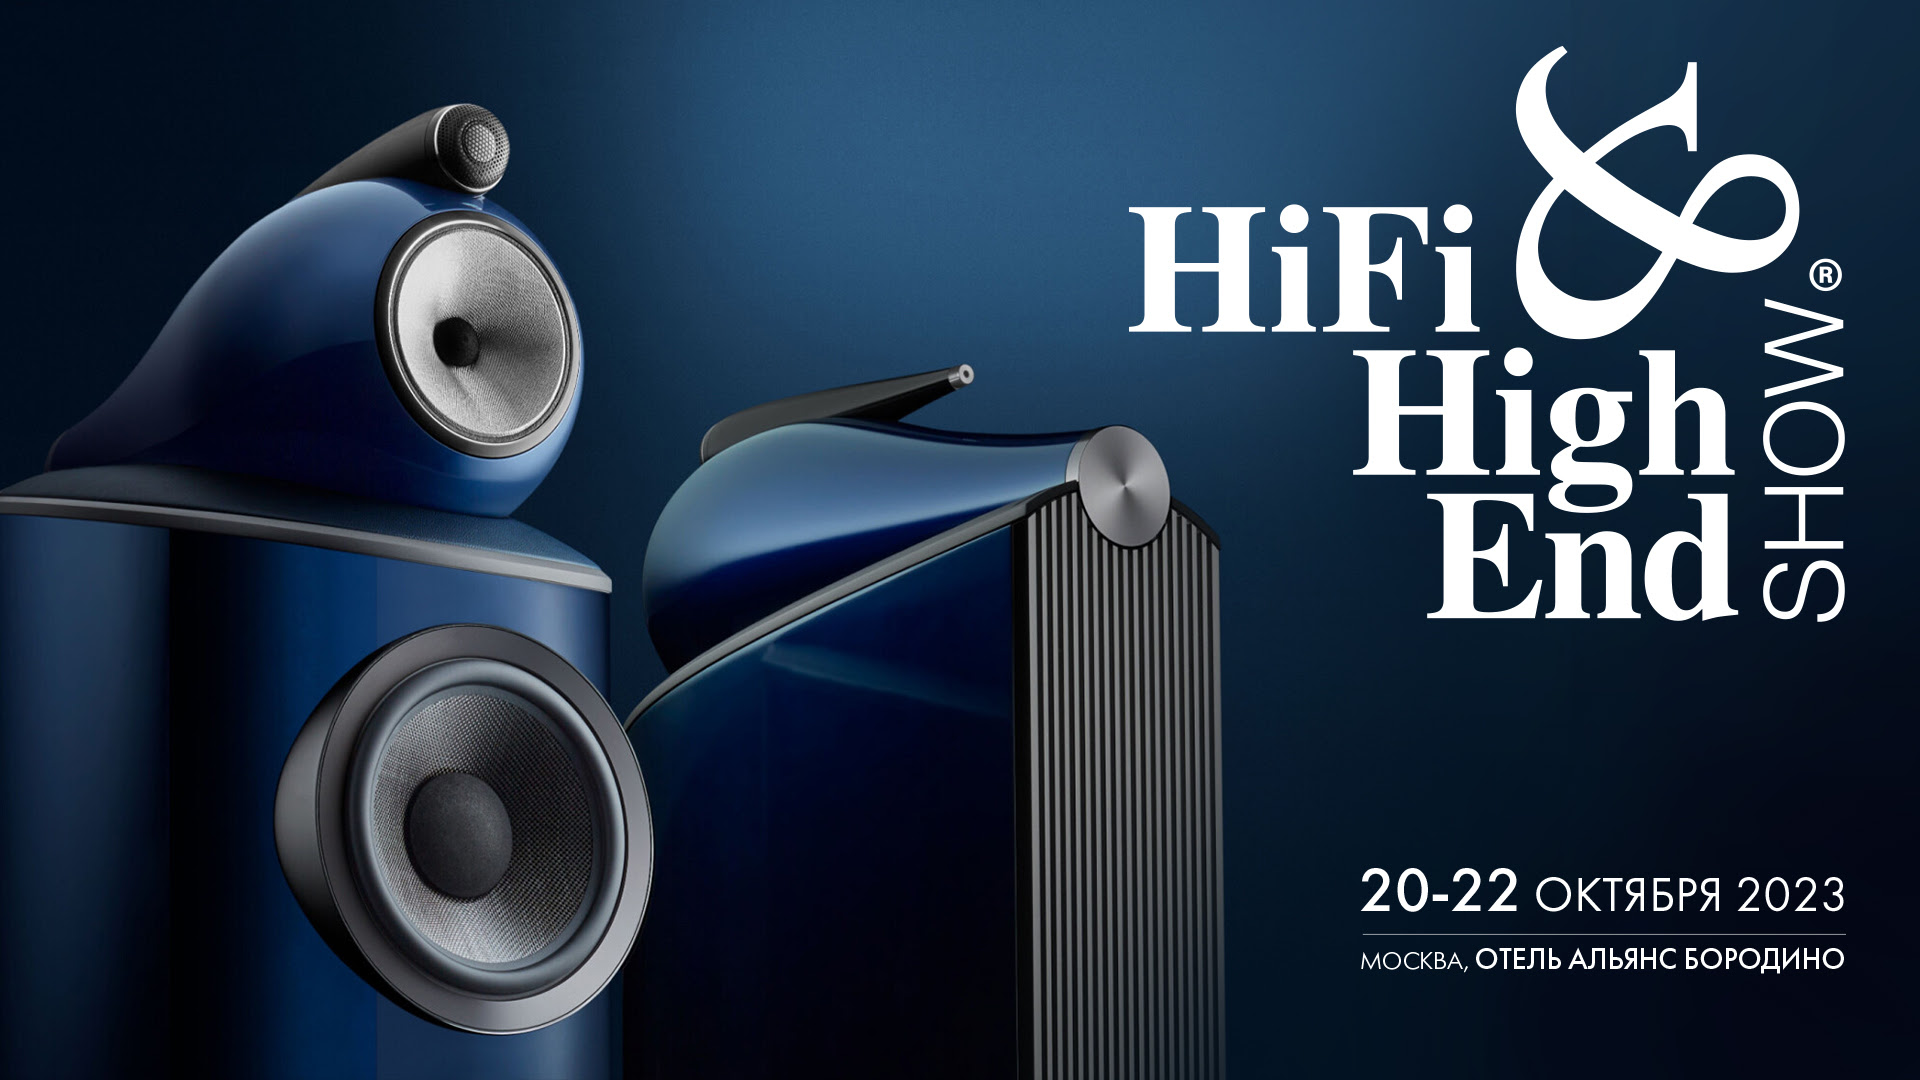 Выставка Hi-Fi & High End Show с 20 по 22 октября в Москве